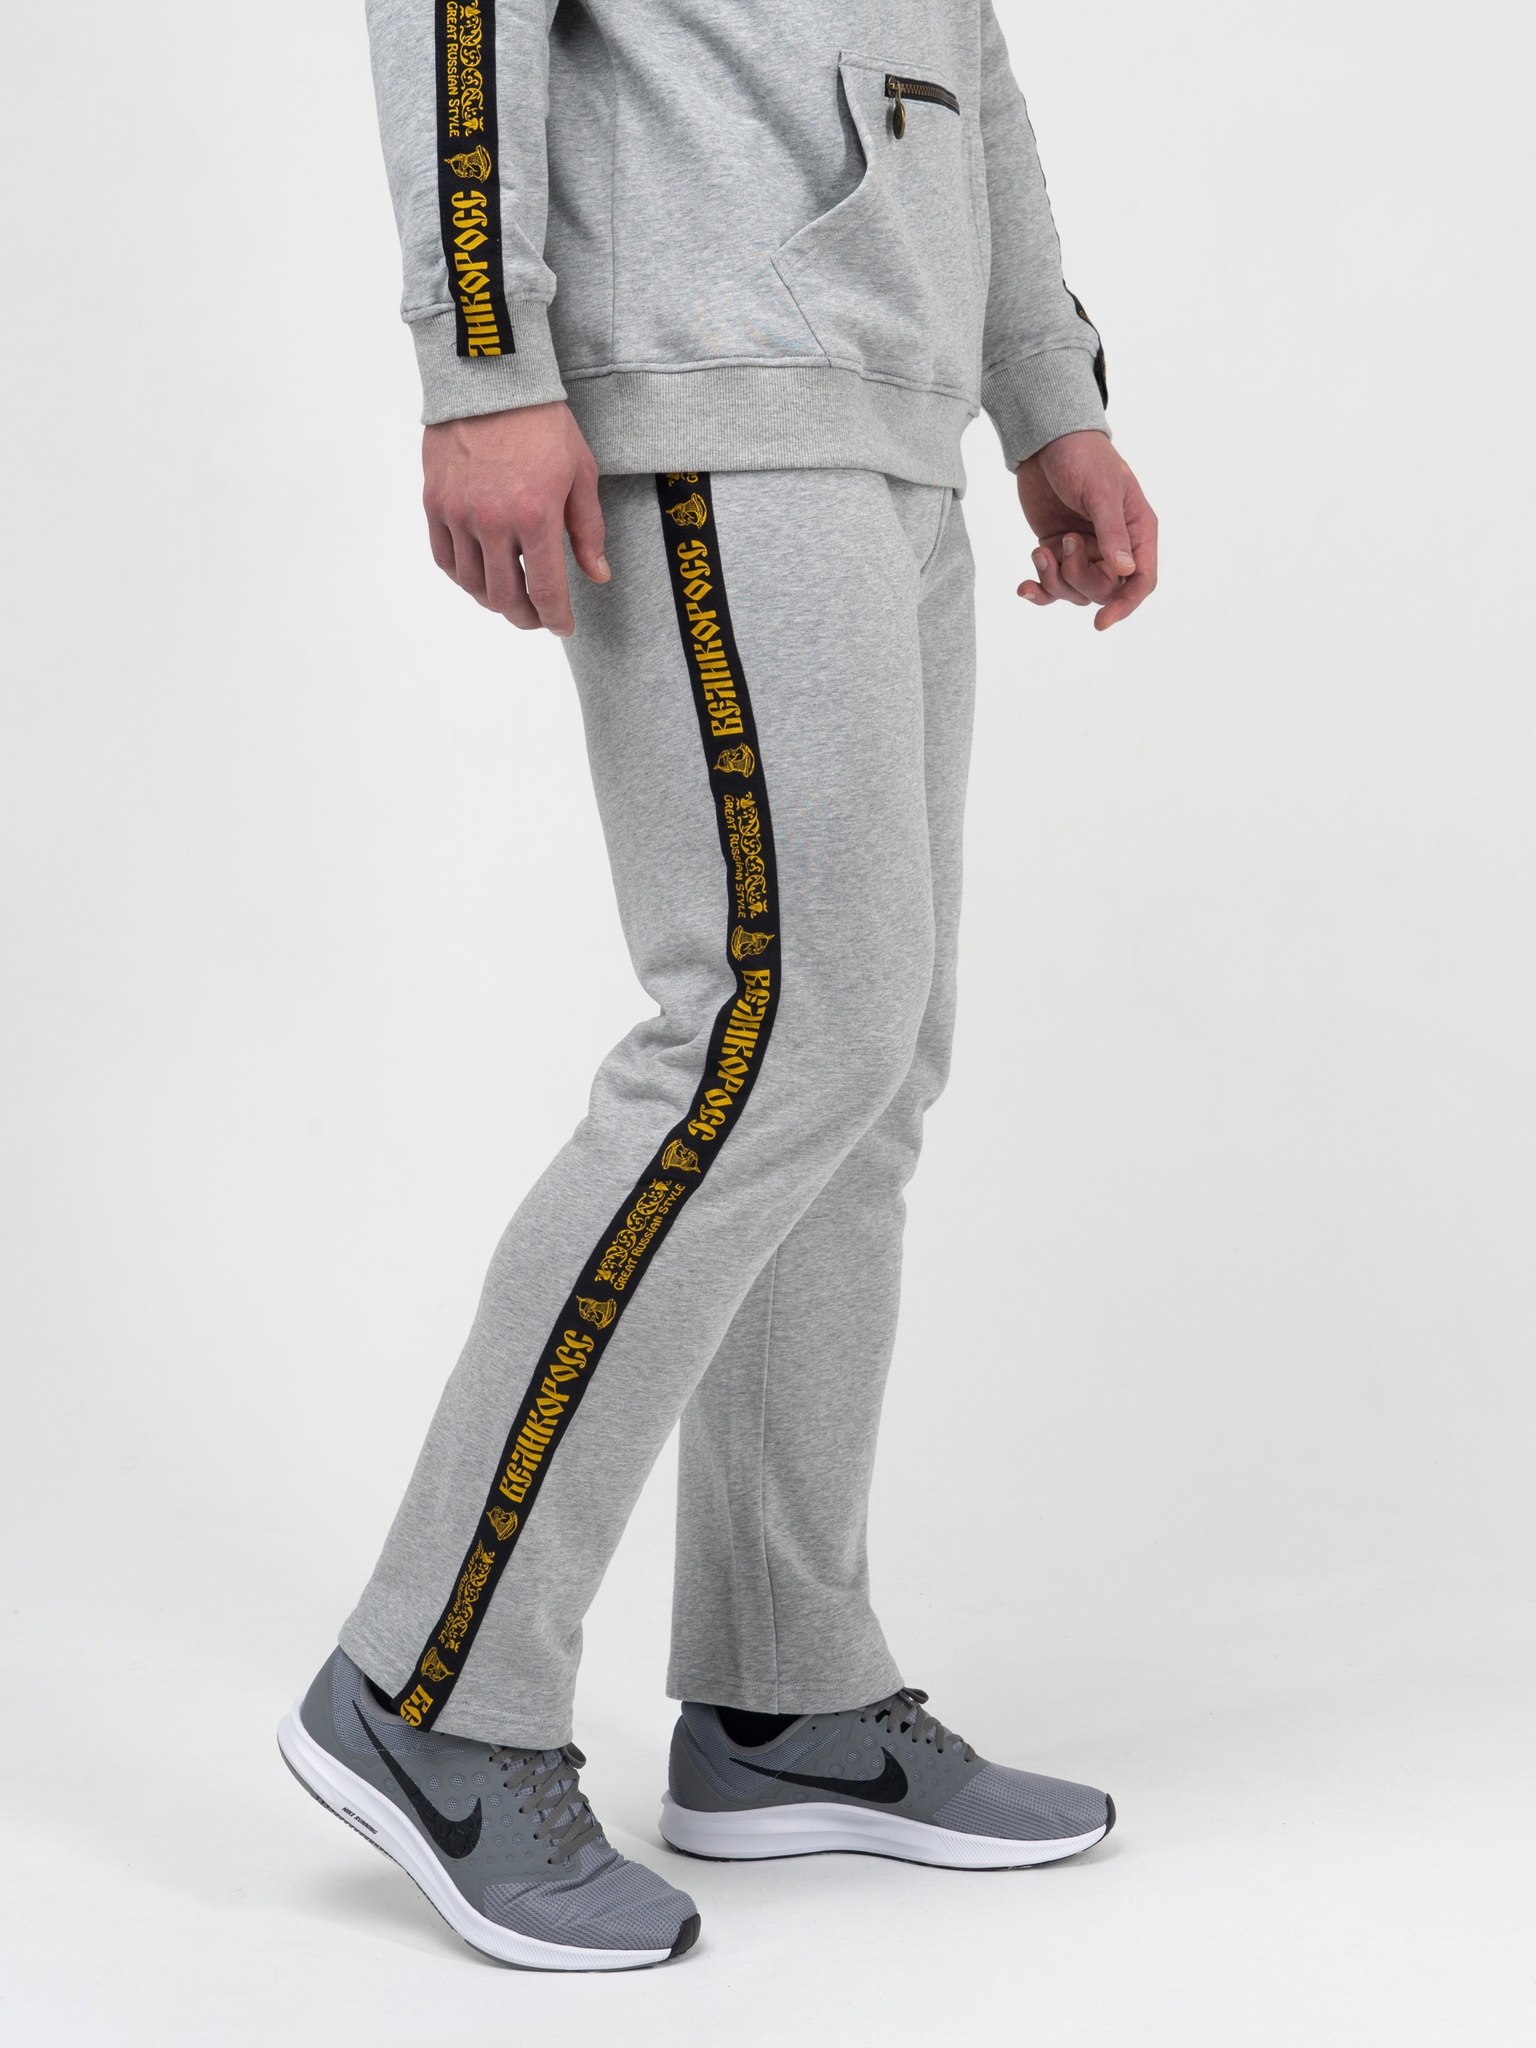 фото Спортивные брюки мужские великоросс bm серые 62 ru